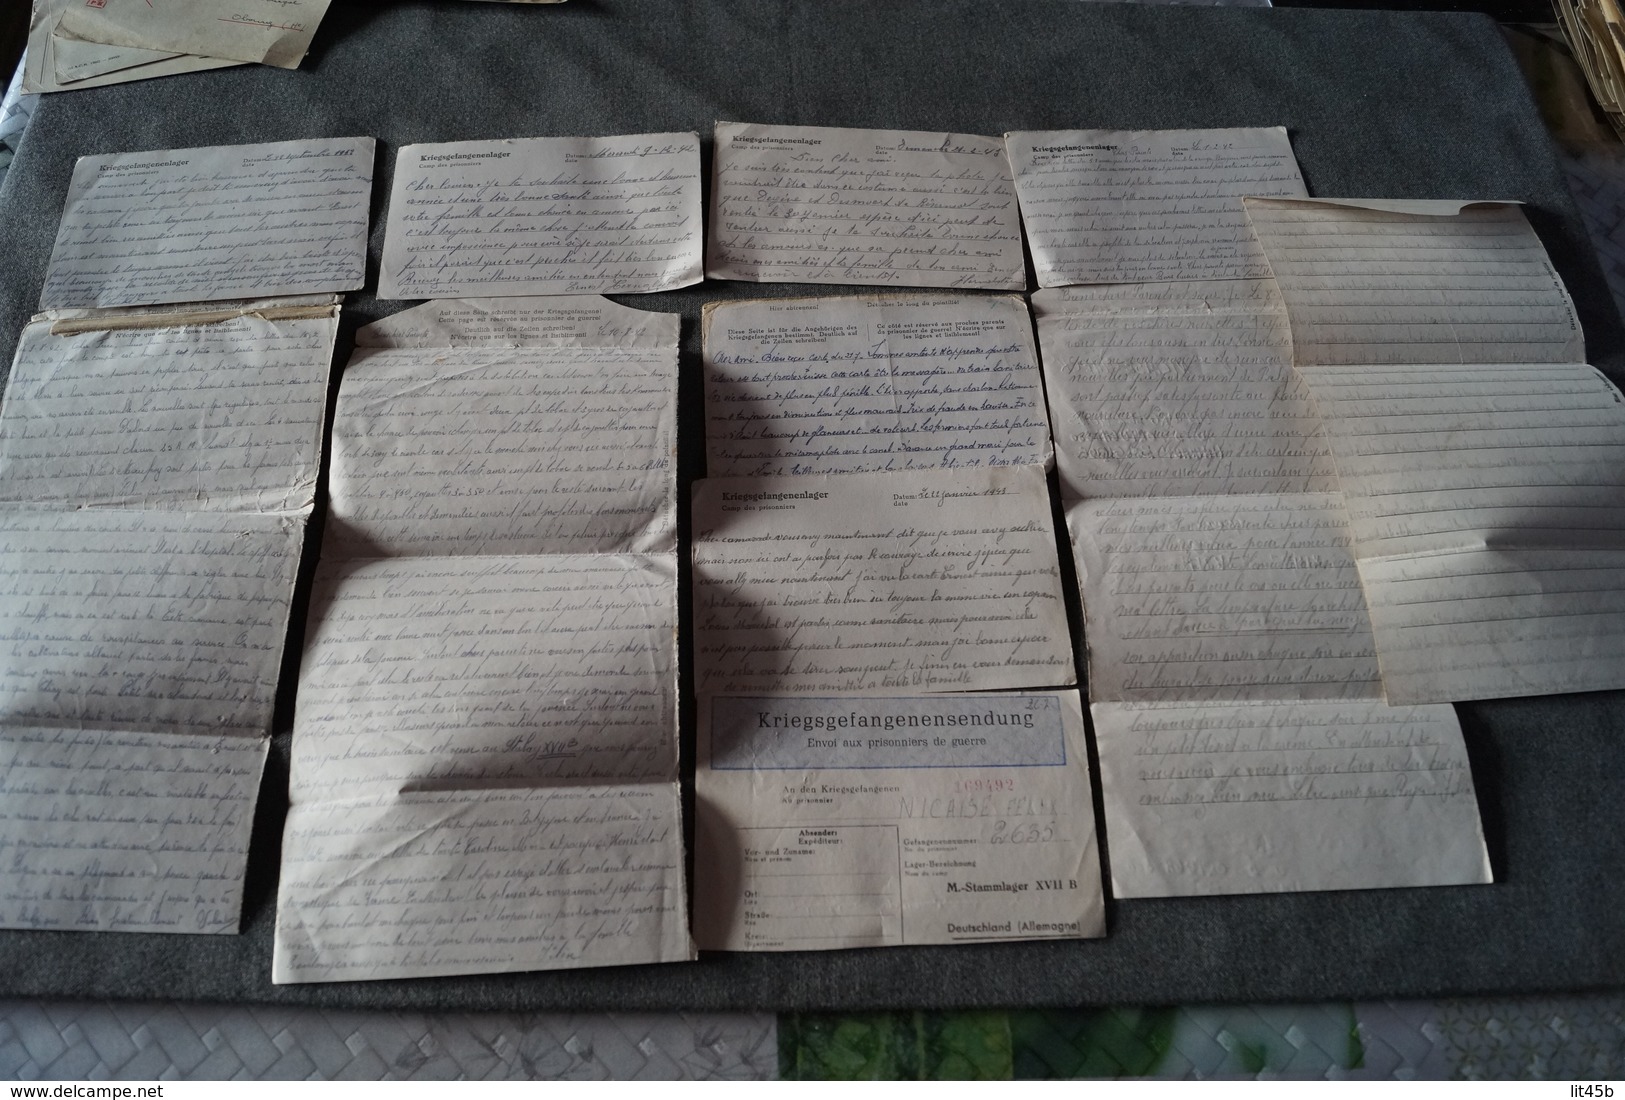 superbe lot de 11 courriers originaux du camp STALAG,Nicaise Maeck,prisonniers en Allemagne